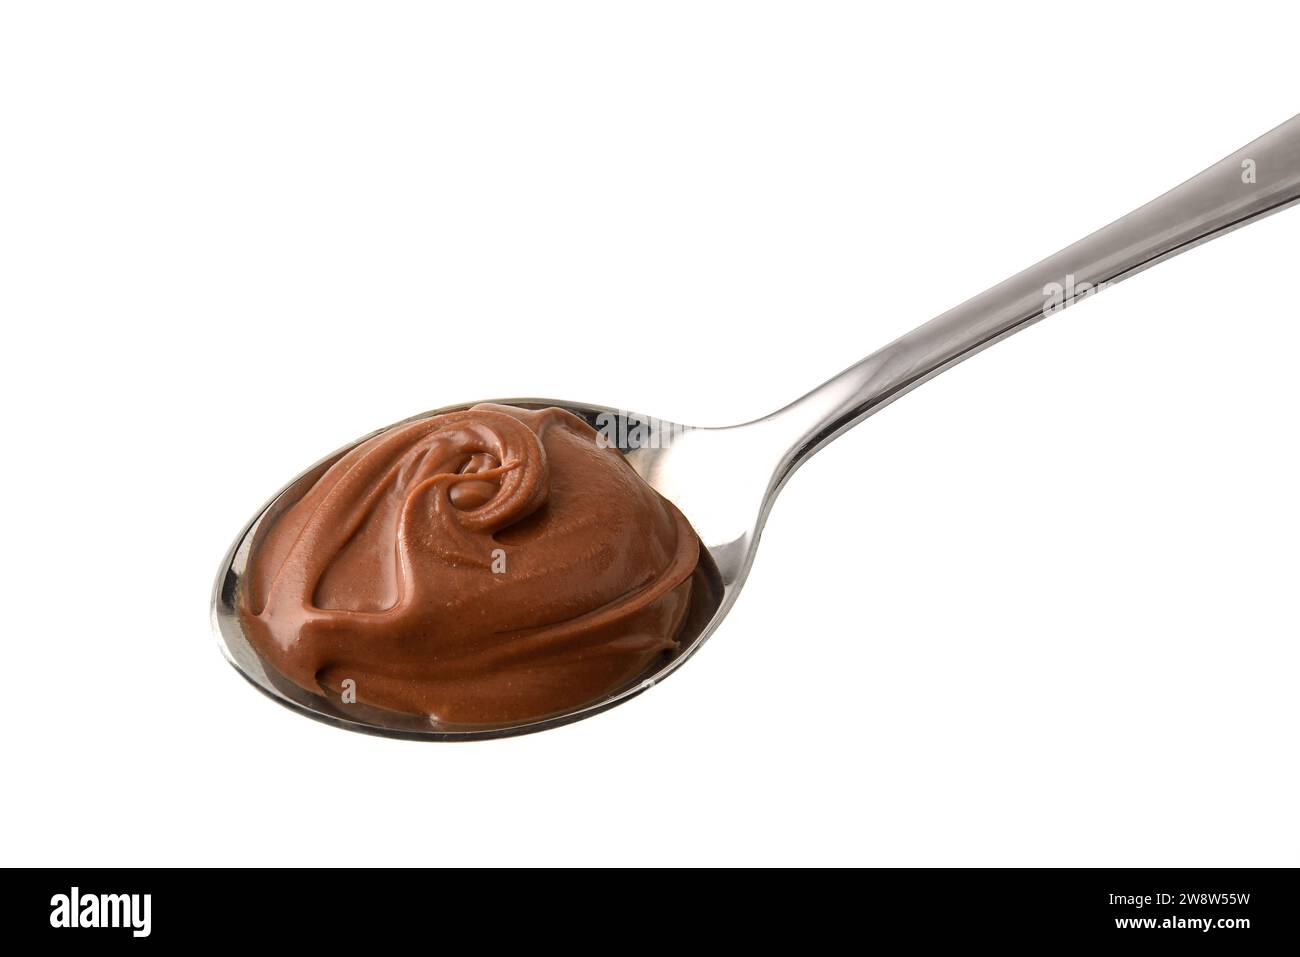 Dettaglio del cucchiaio metallico di crema di cacao isolato con fondo bianco. Vista dall'alto in alto. Foto Stock